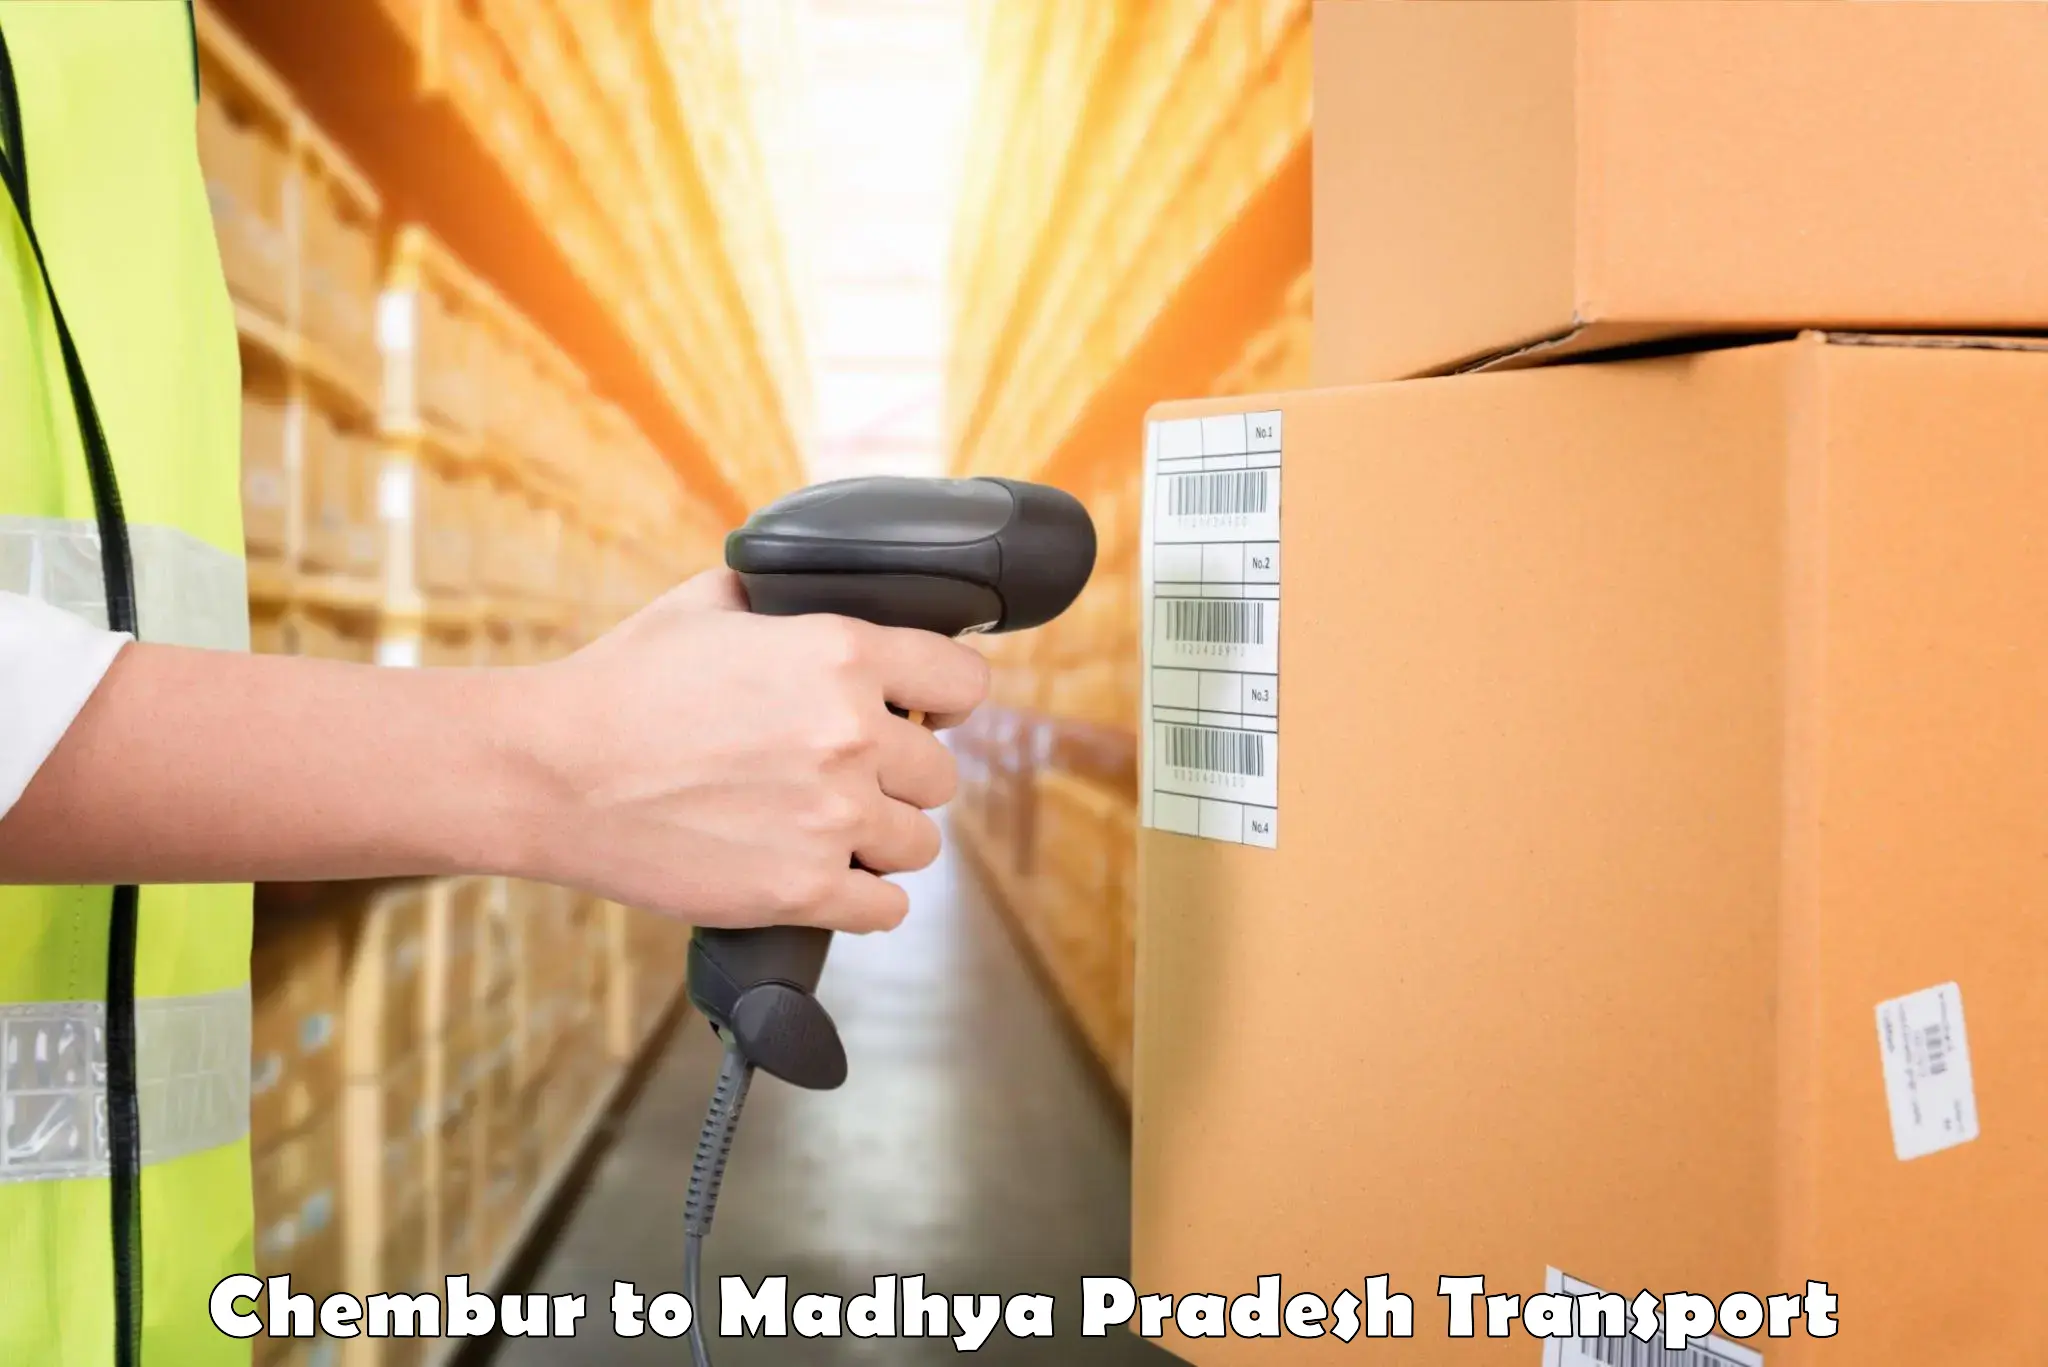 International cargo transportation services Chembur to Madhya Pradesh